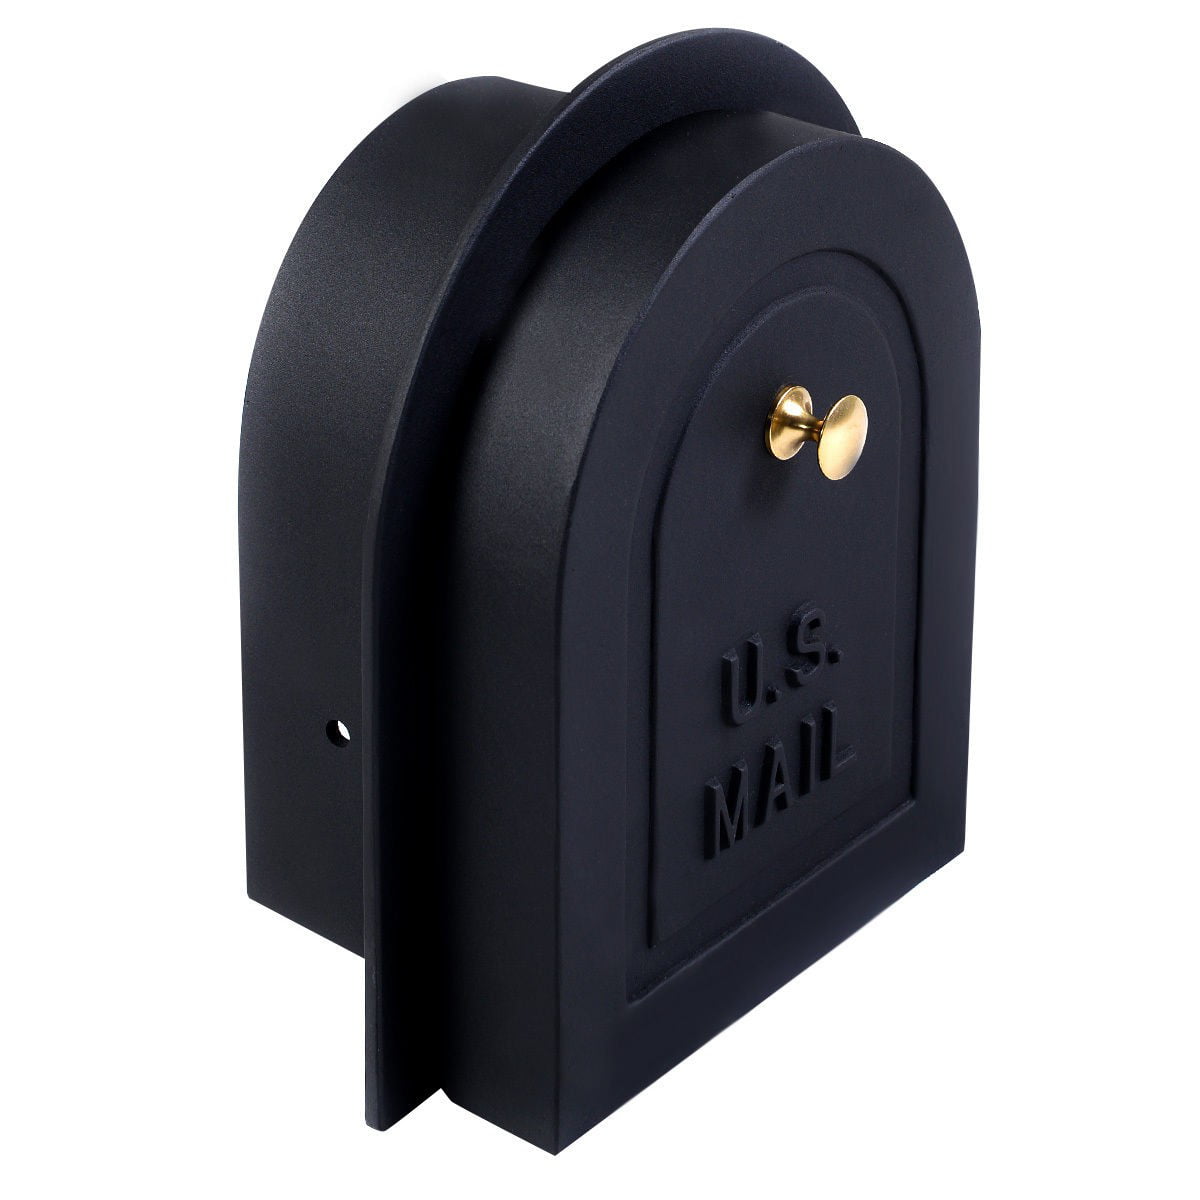 mailbox door replacement